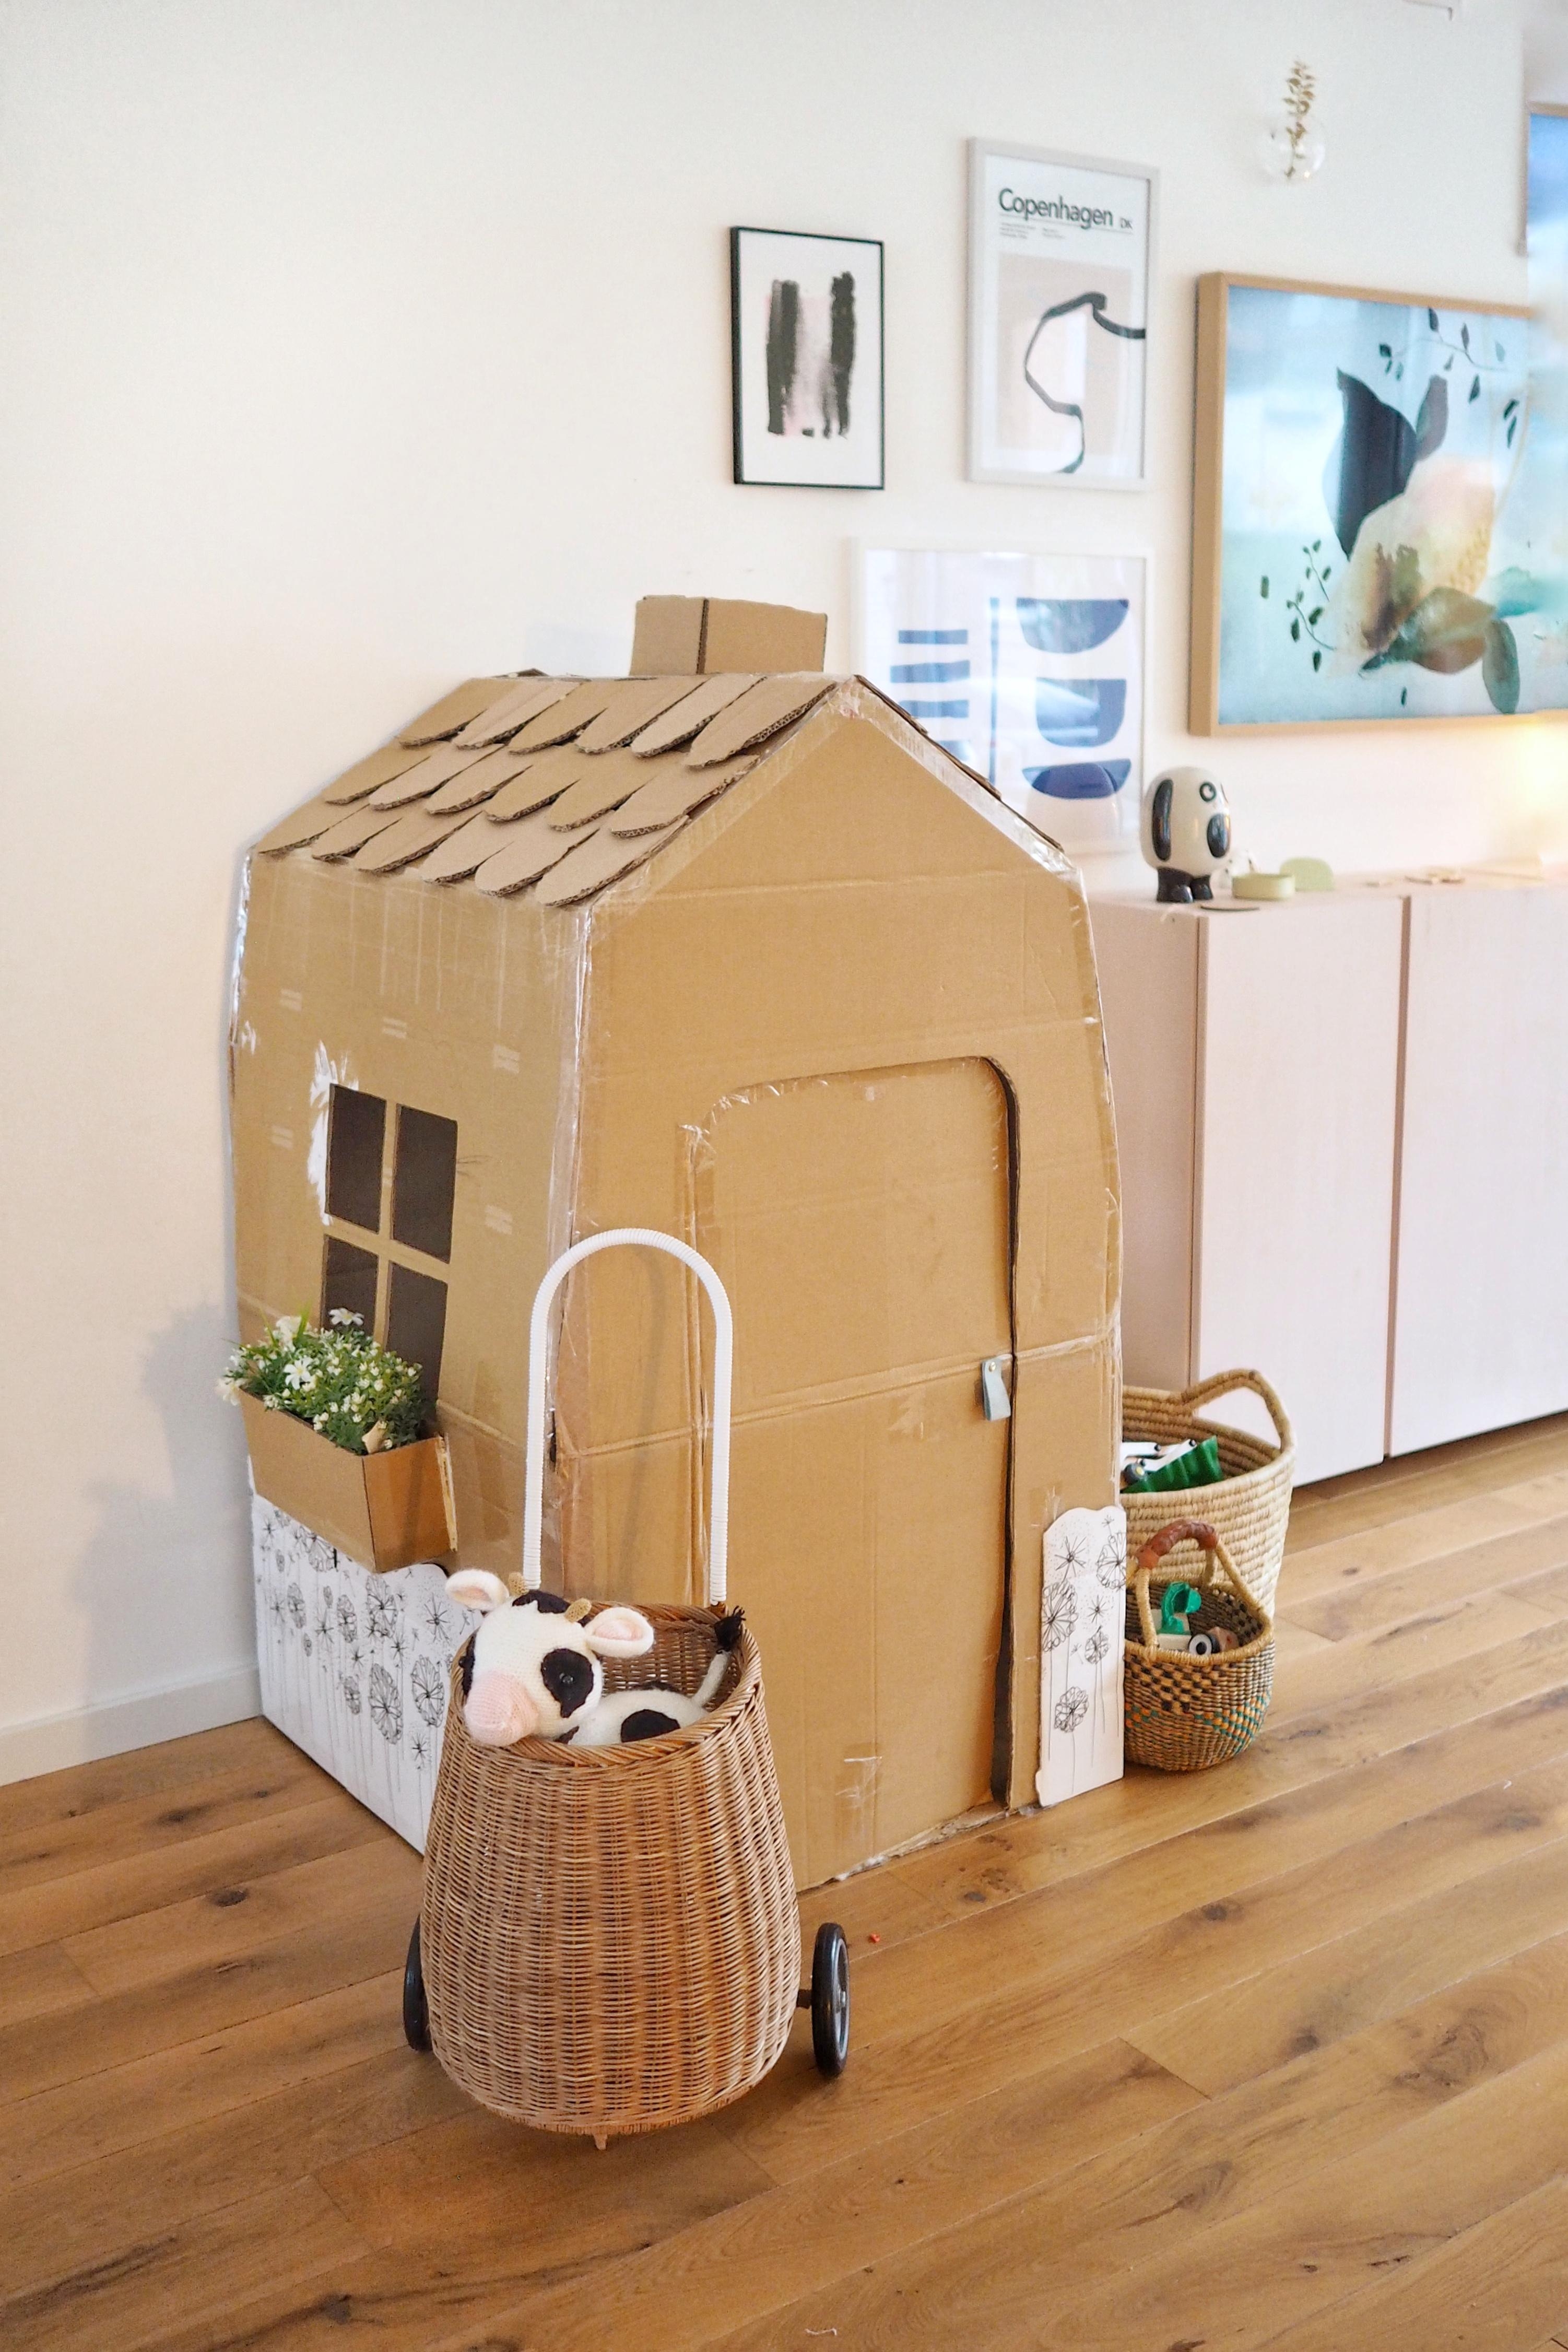 Papphaus für den Mini. Super schnell und einfach gemacht.
#wohnzimmer